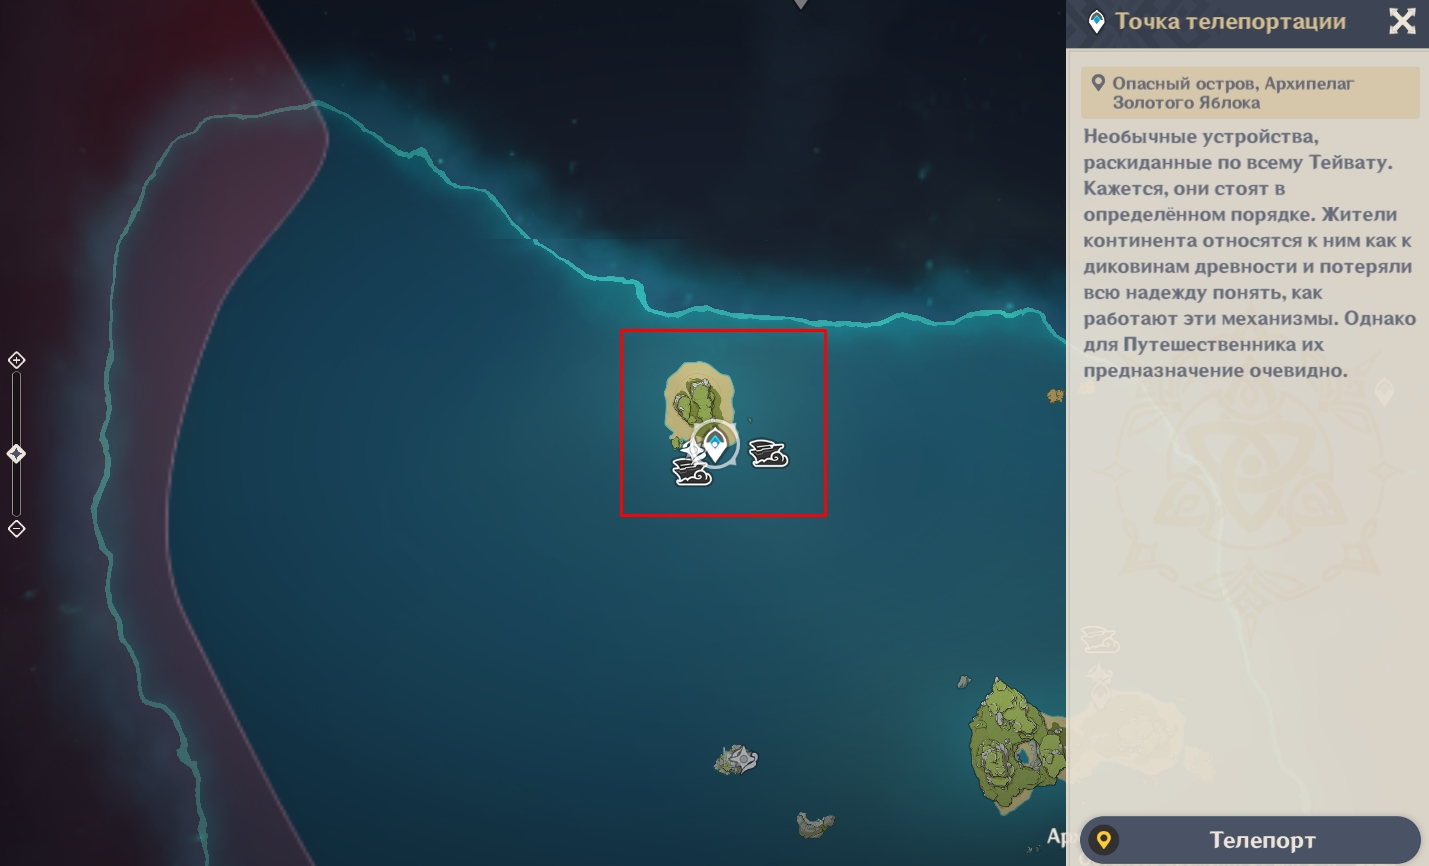 Опасный остров архипелаг золотого яблока. Карта архипелага золотого яблока. Архипелаг карта заданий.